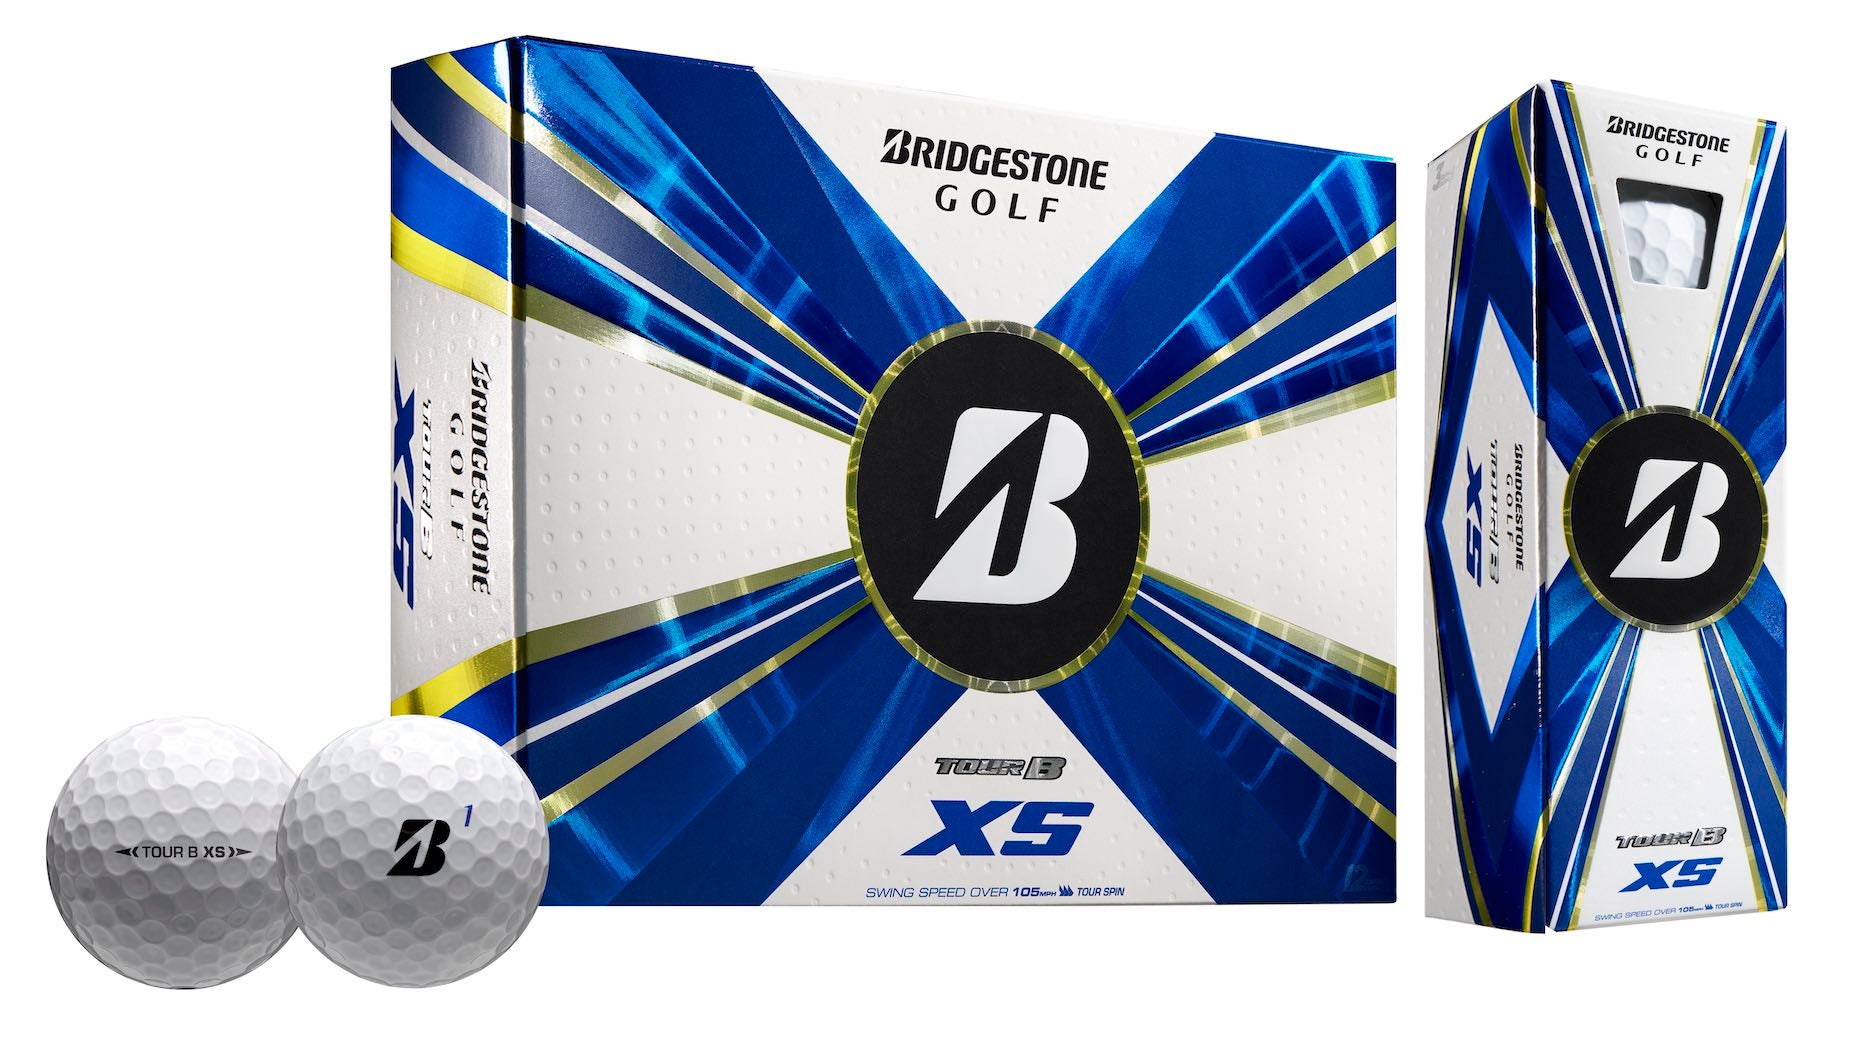 Bridgestone's Tour B X, Tour B XS, Tour B RX and Tour B RXS golf balls